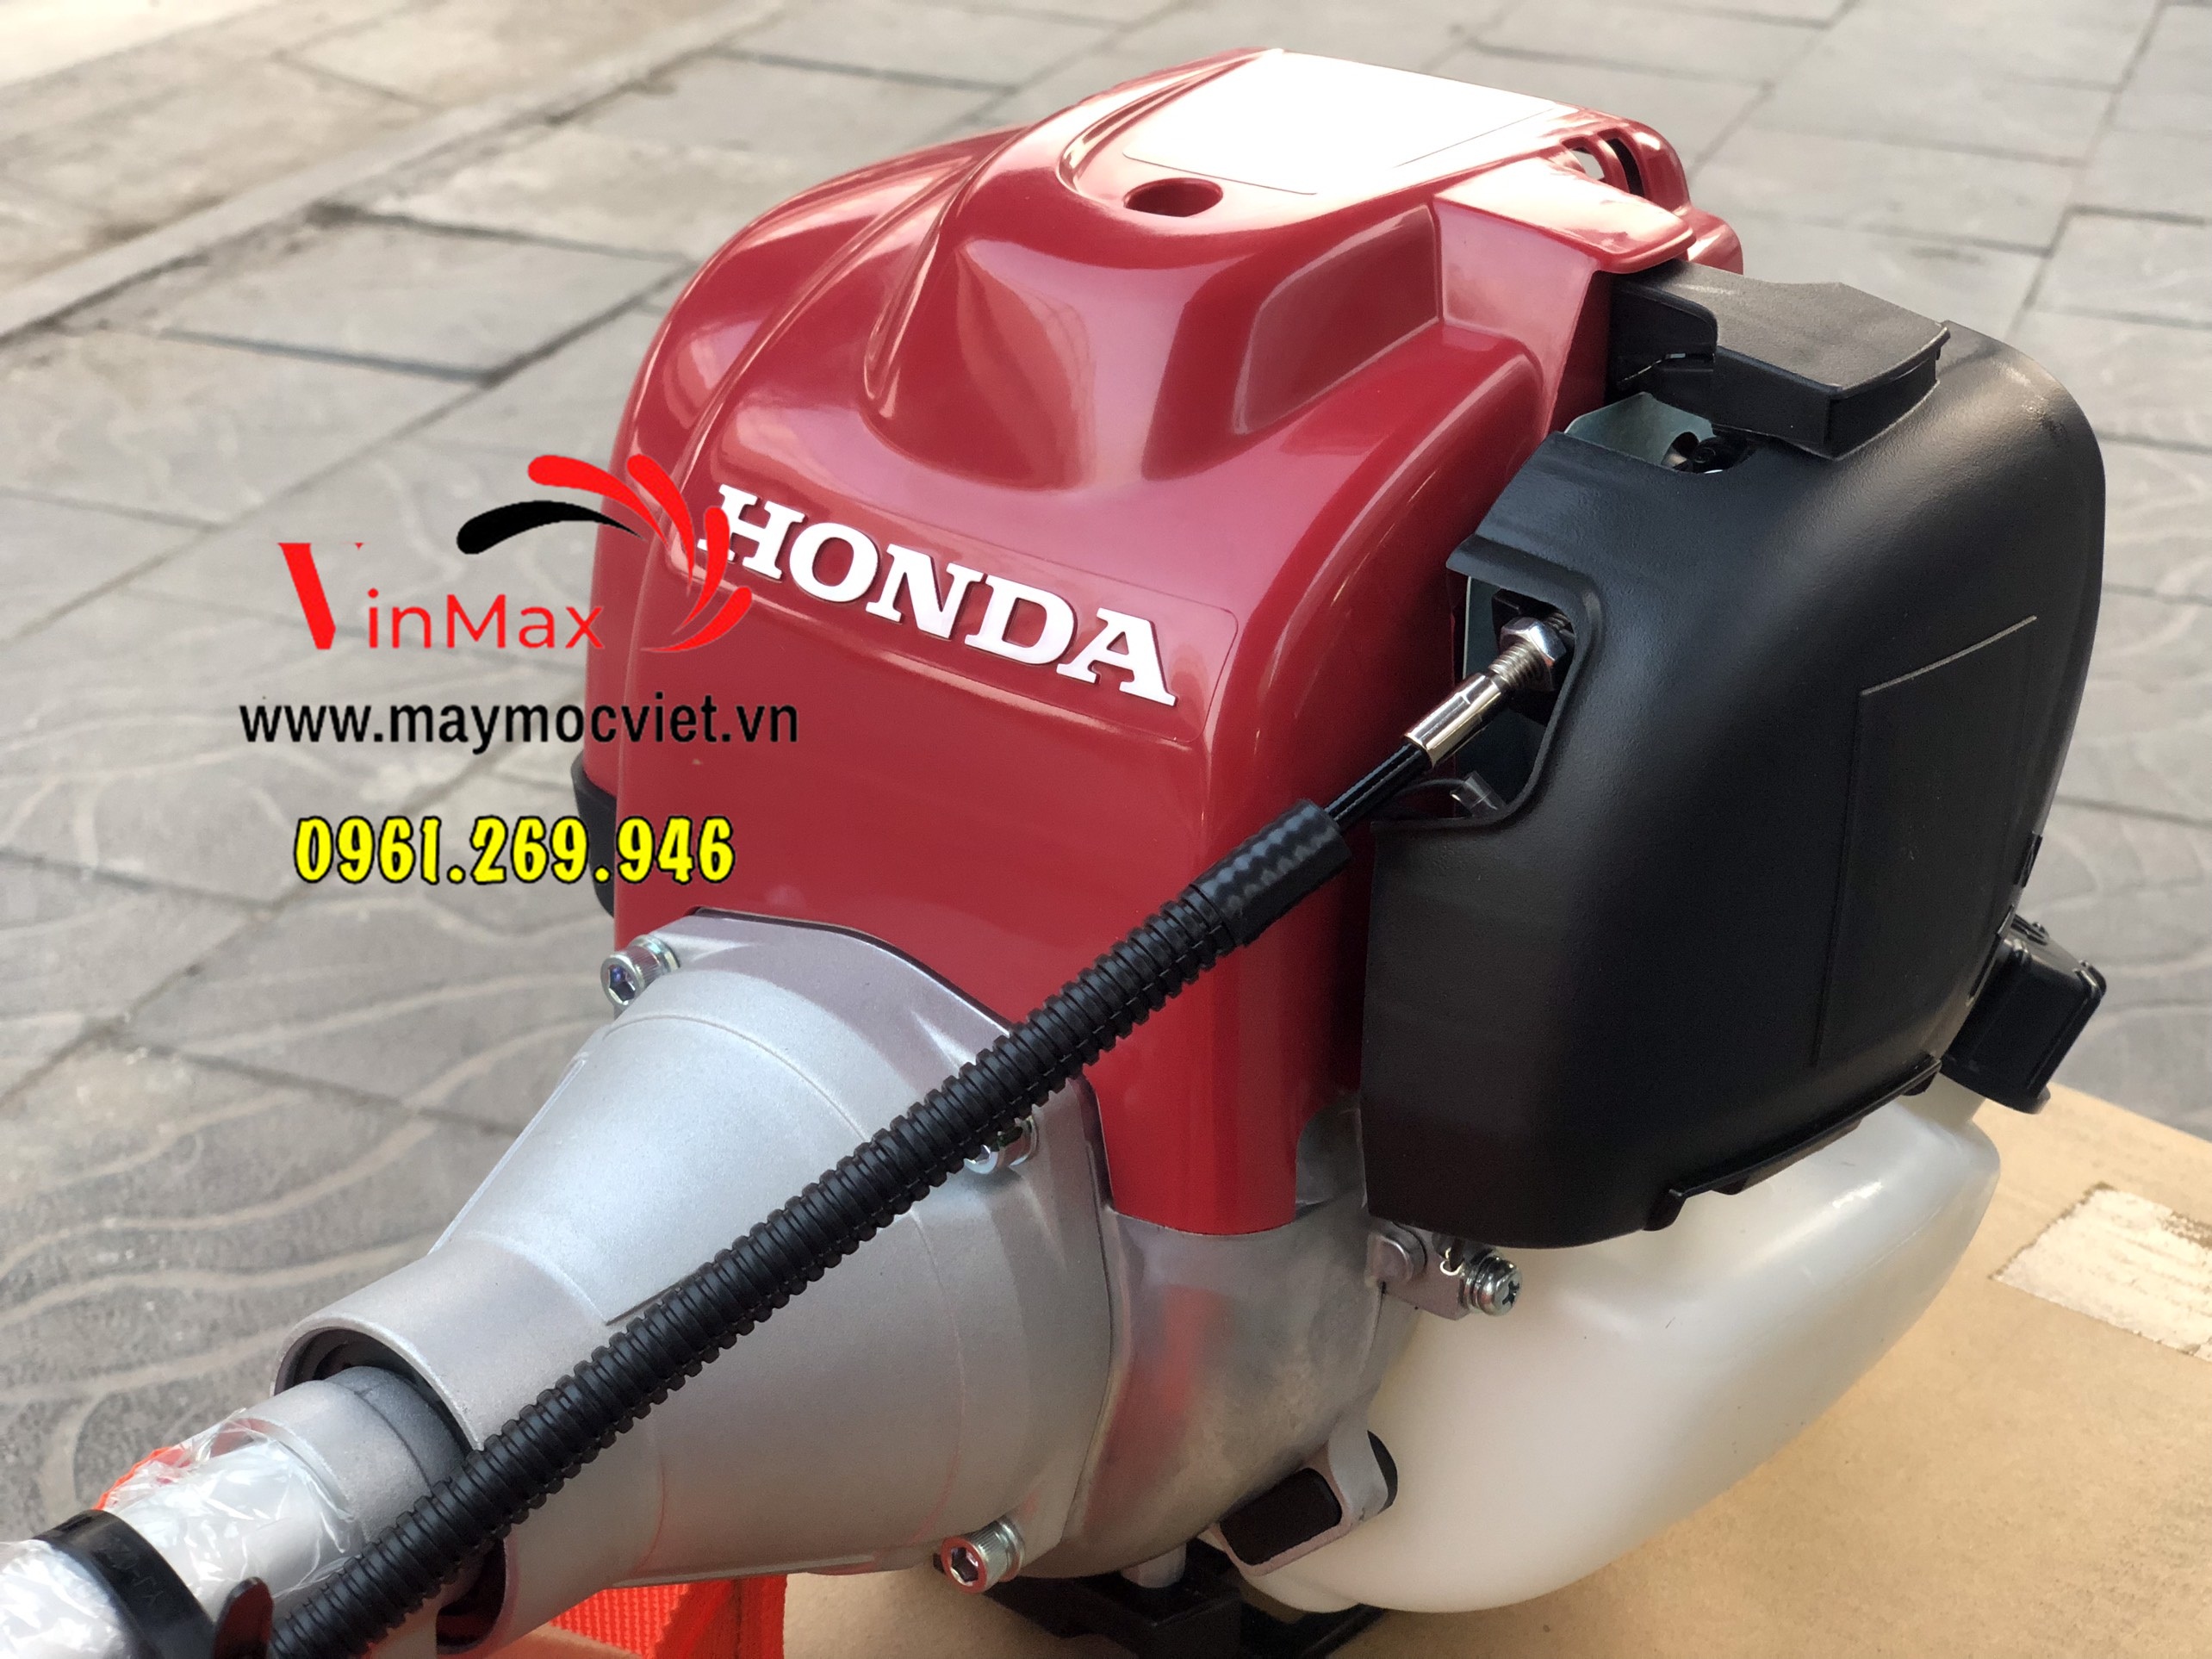 Máy cắt cỏ Honda UMK435T nhập nguyên chiếc Thái Lan